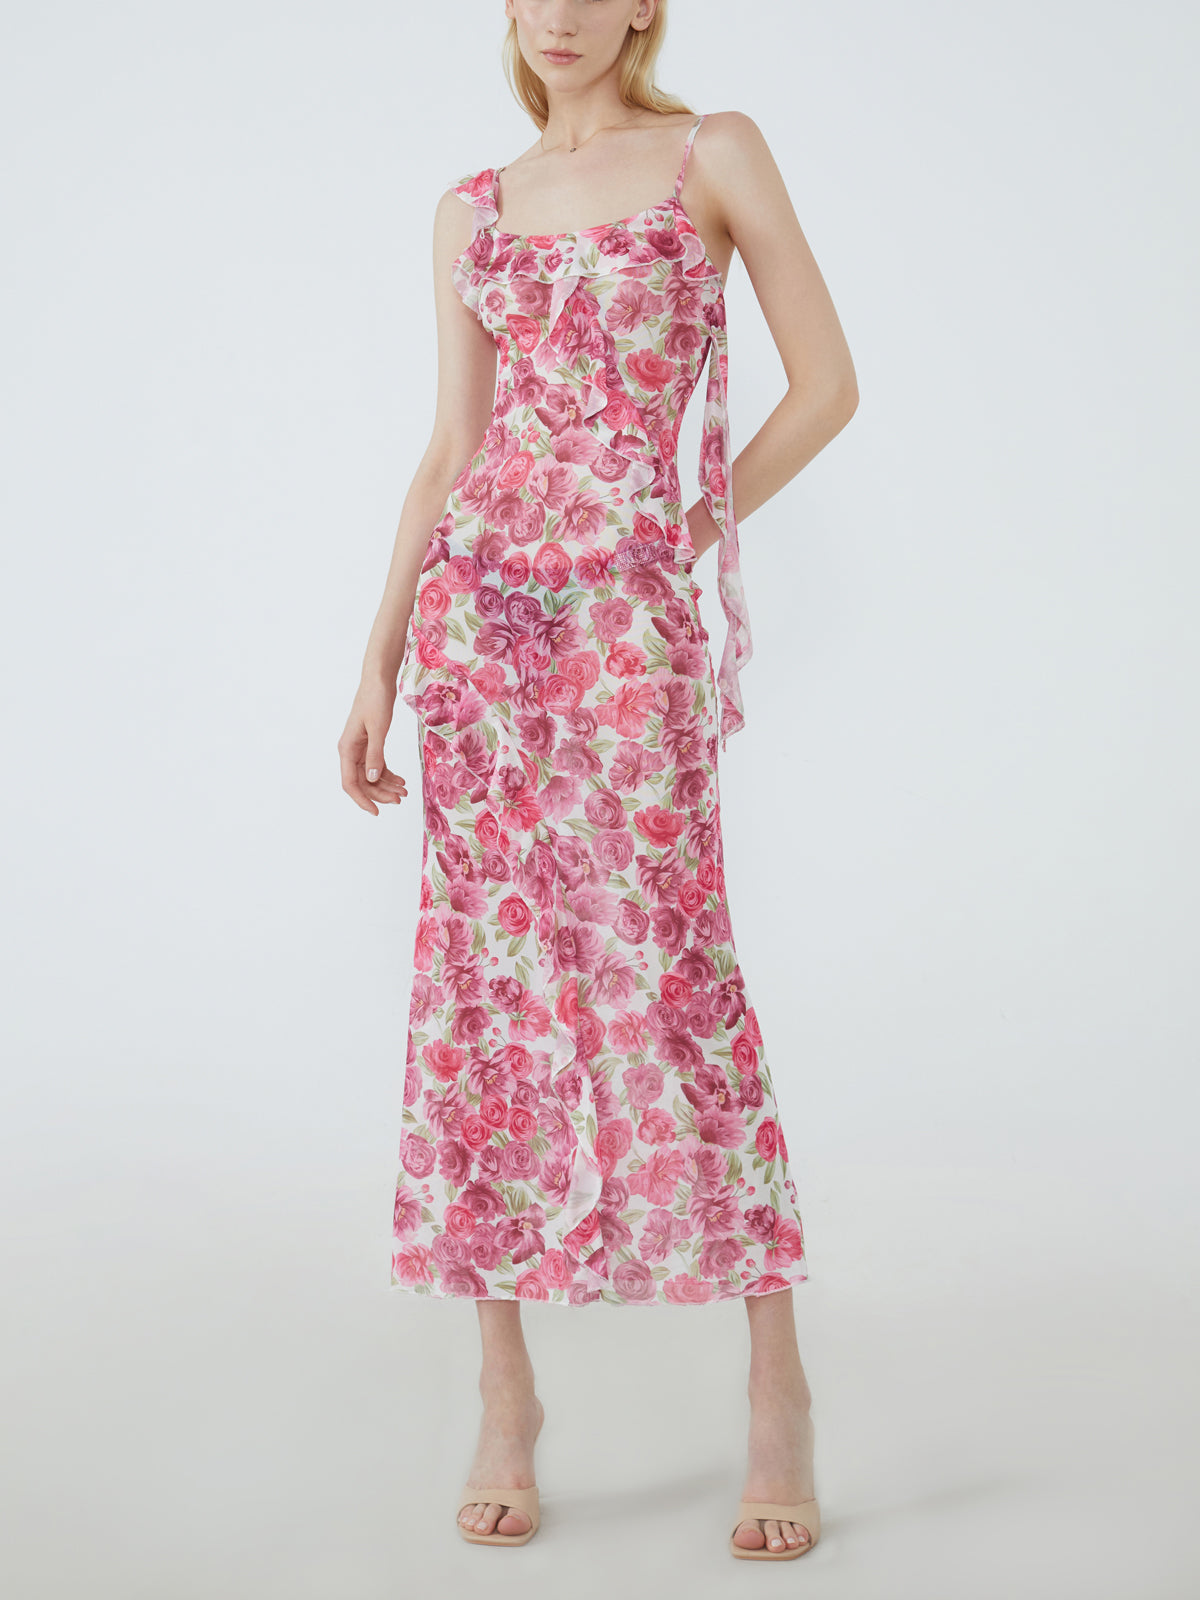 Asymmetrical Strap Floral Ruffle Long Dress